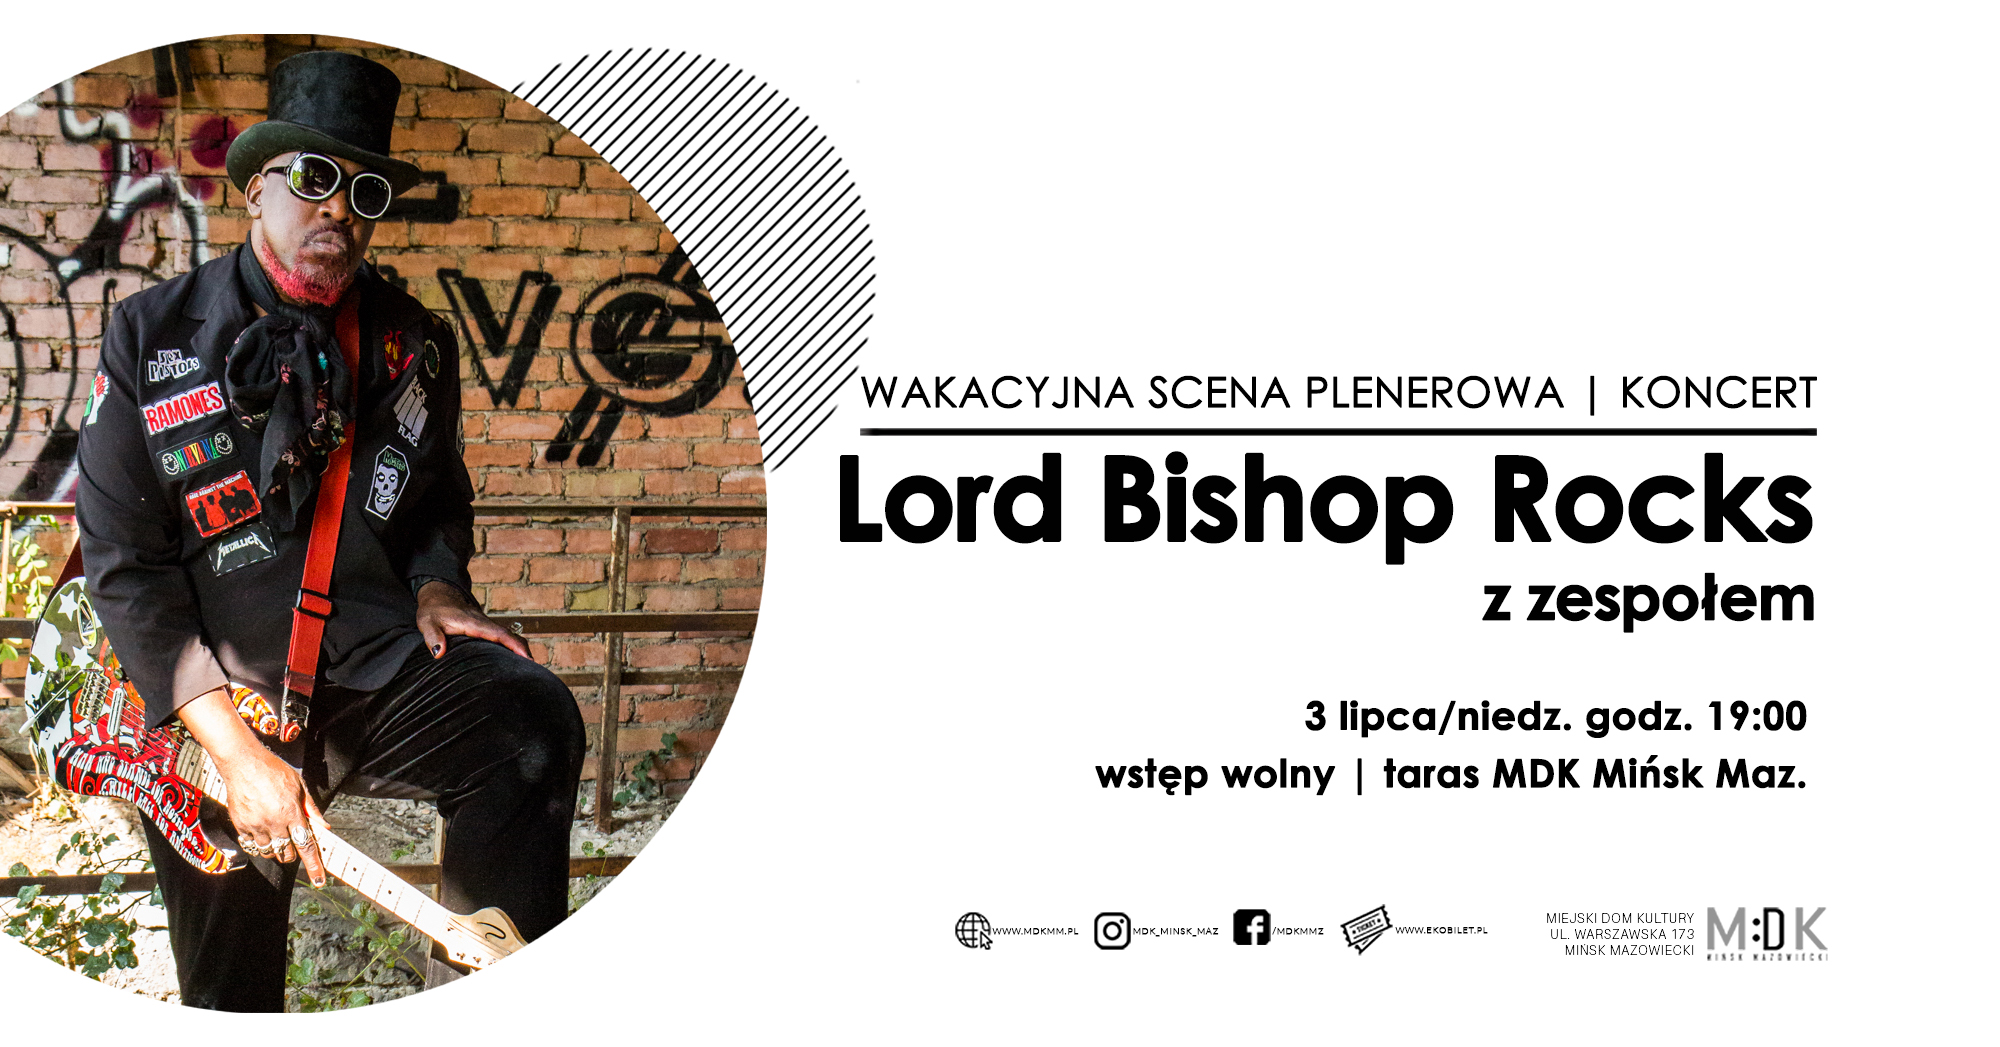 Lord Bishop Rocks z zespołem | Wakacyjna Scena Plenerowa